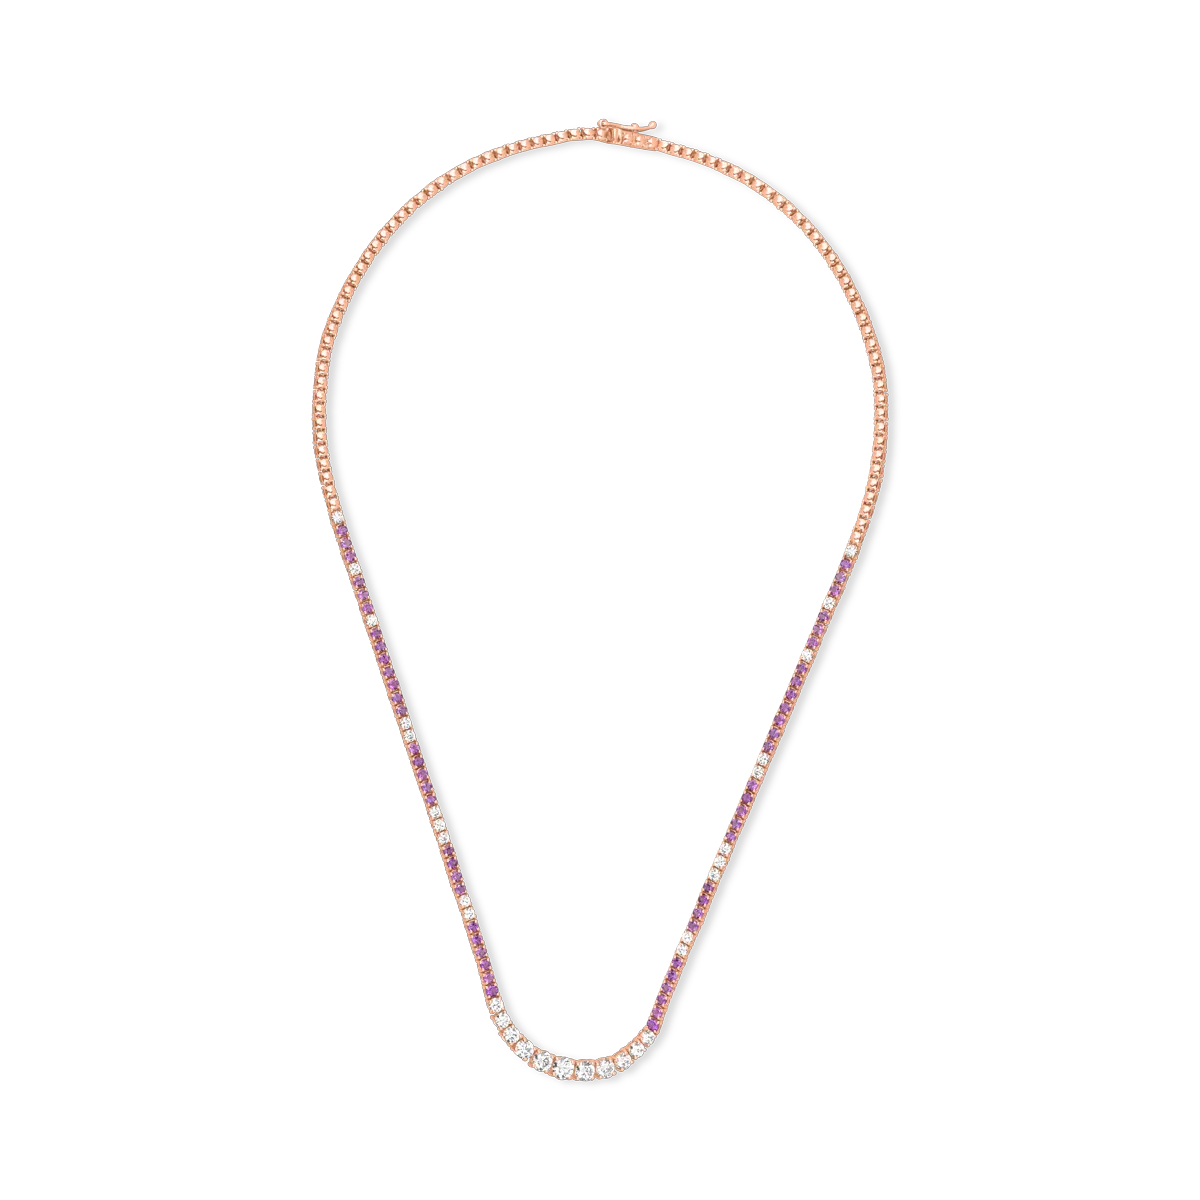 18k rózsaszínű arany tenisz nyaklánc, a 2.04ct-es gyémántokkal és az 1.87ct-es ametisztekkel